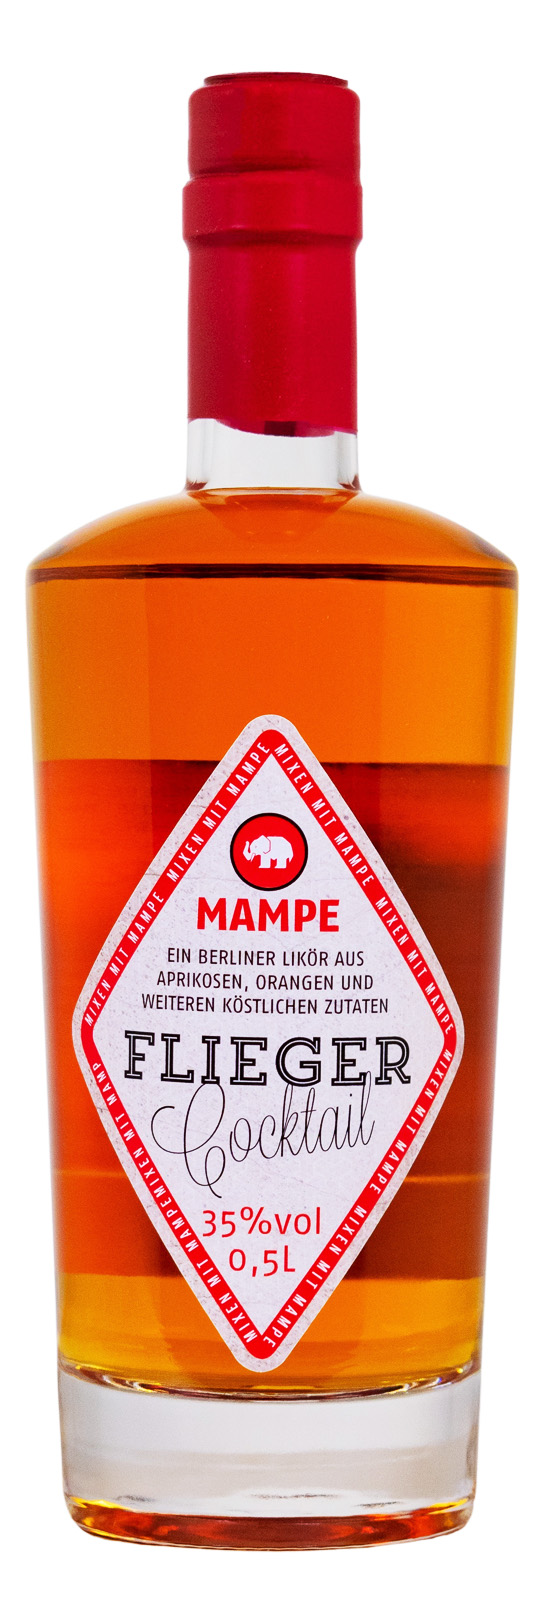 Mampe Fliegercocktail - 0,5L 35% vol